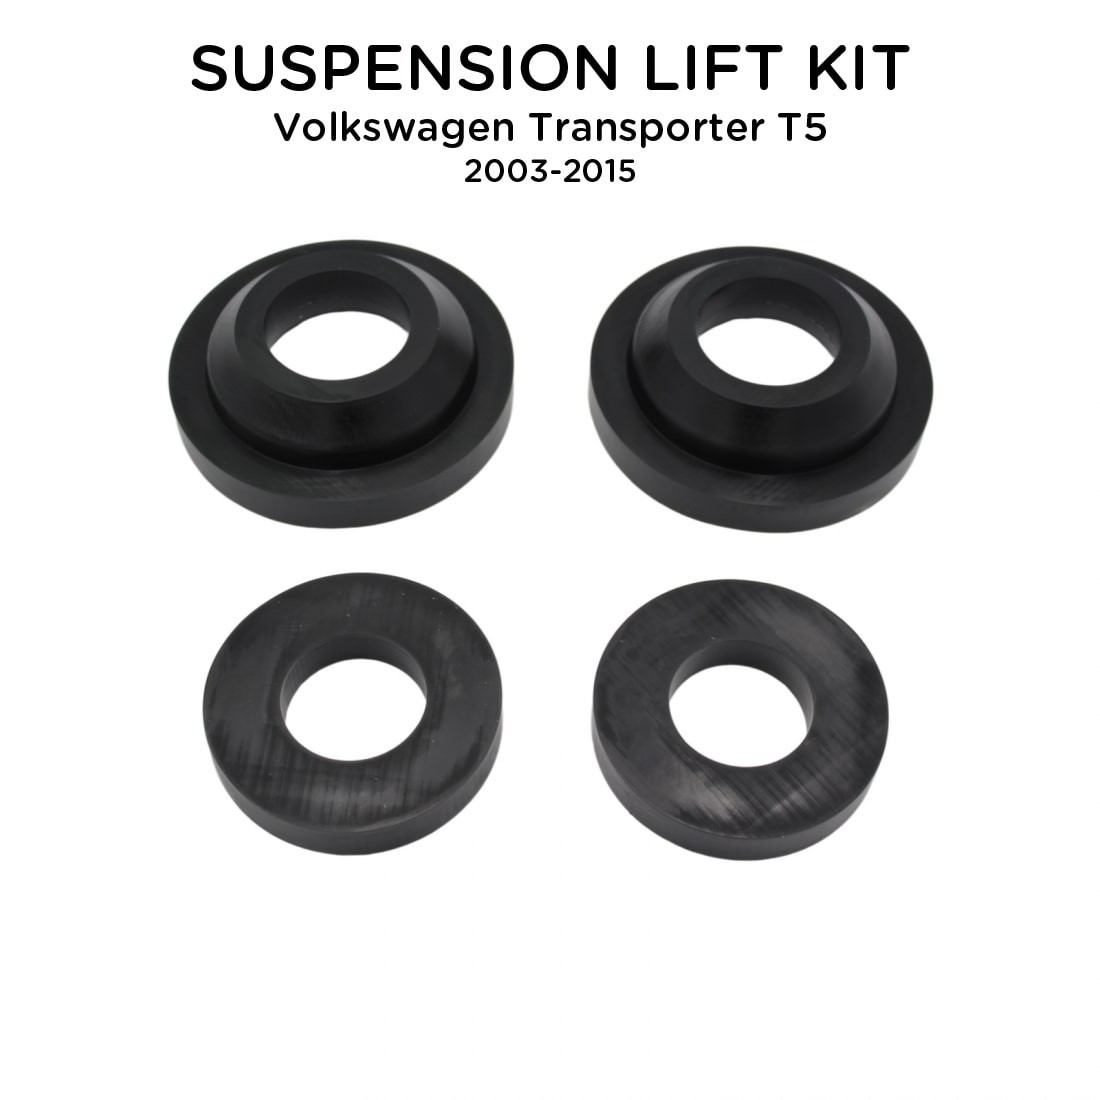 Suspension Lift Kit For Volkswagen Transporter T5 2003-2015